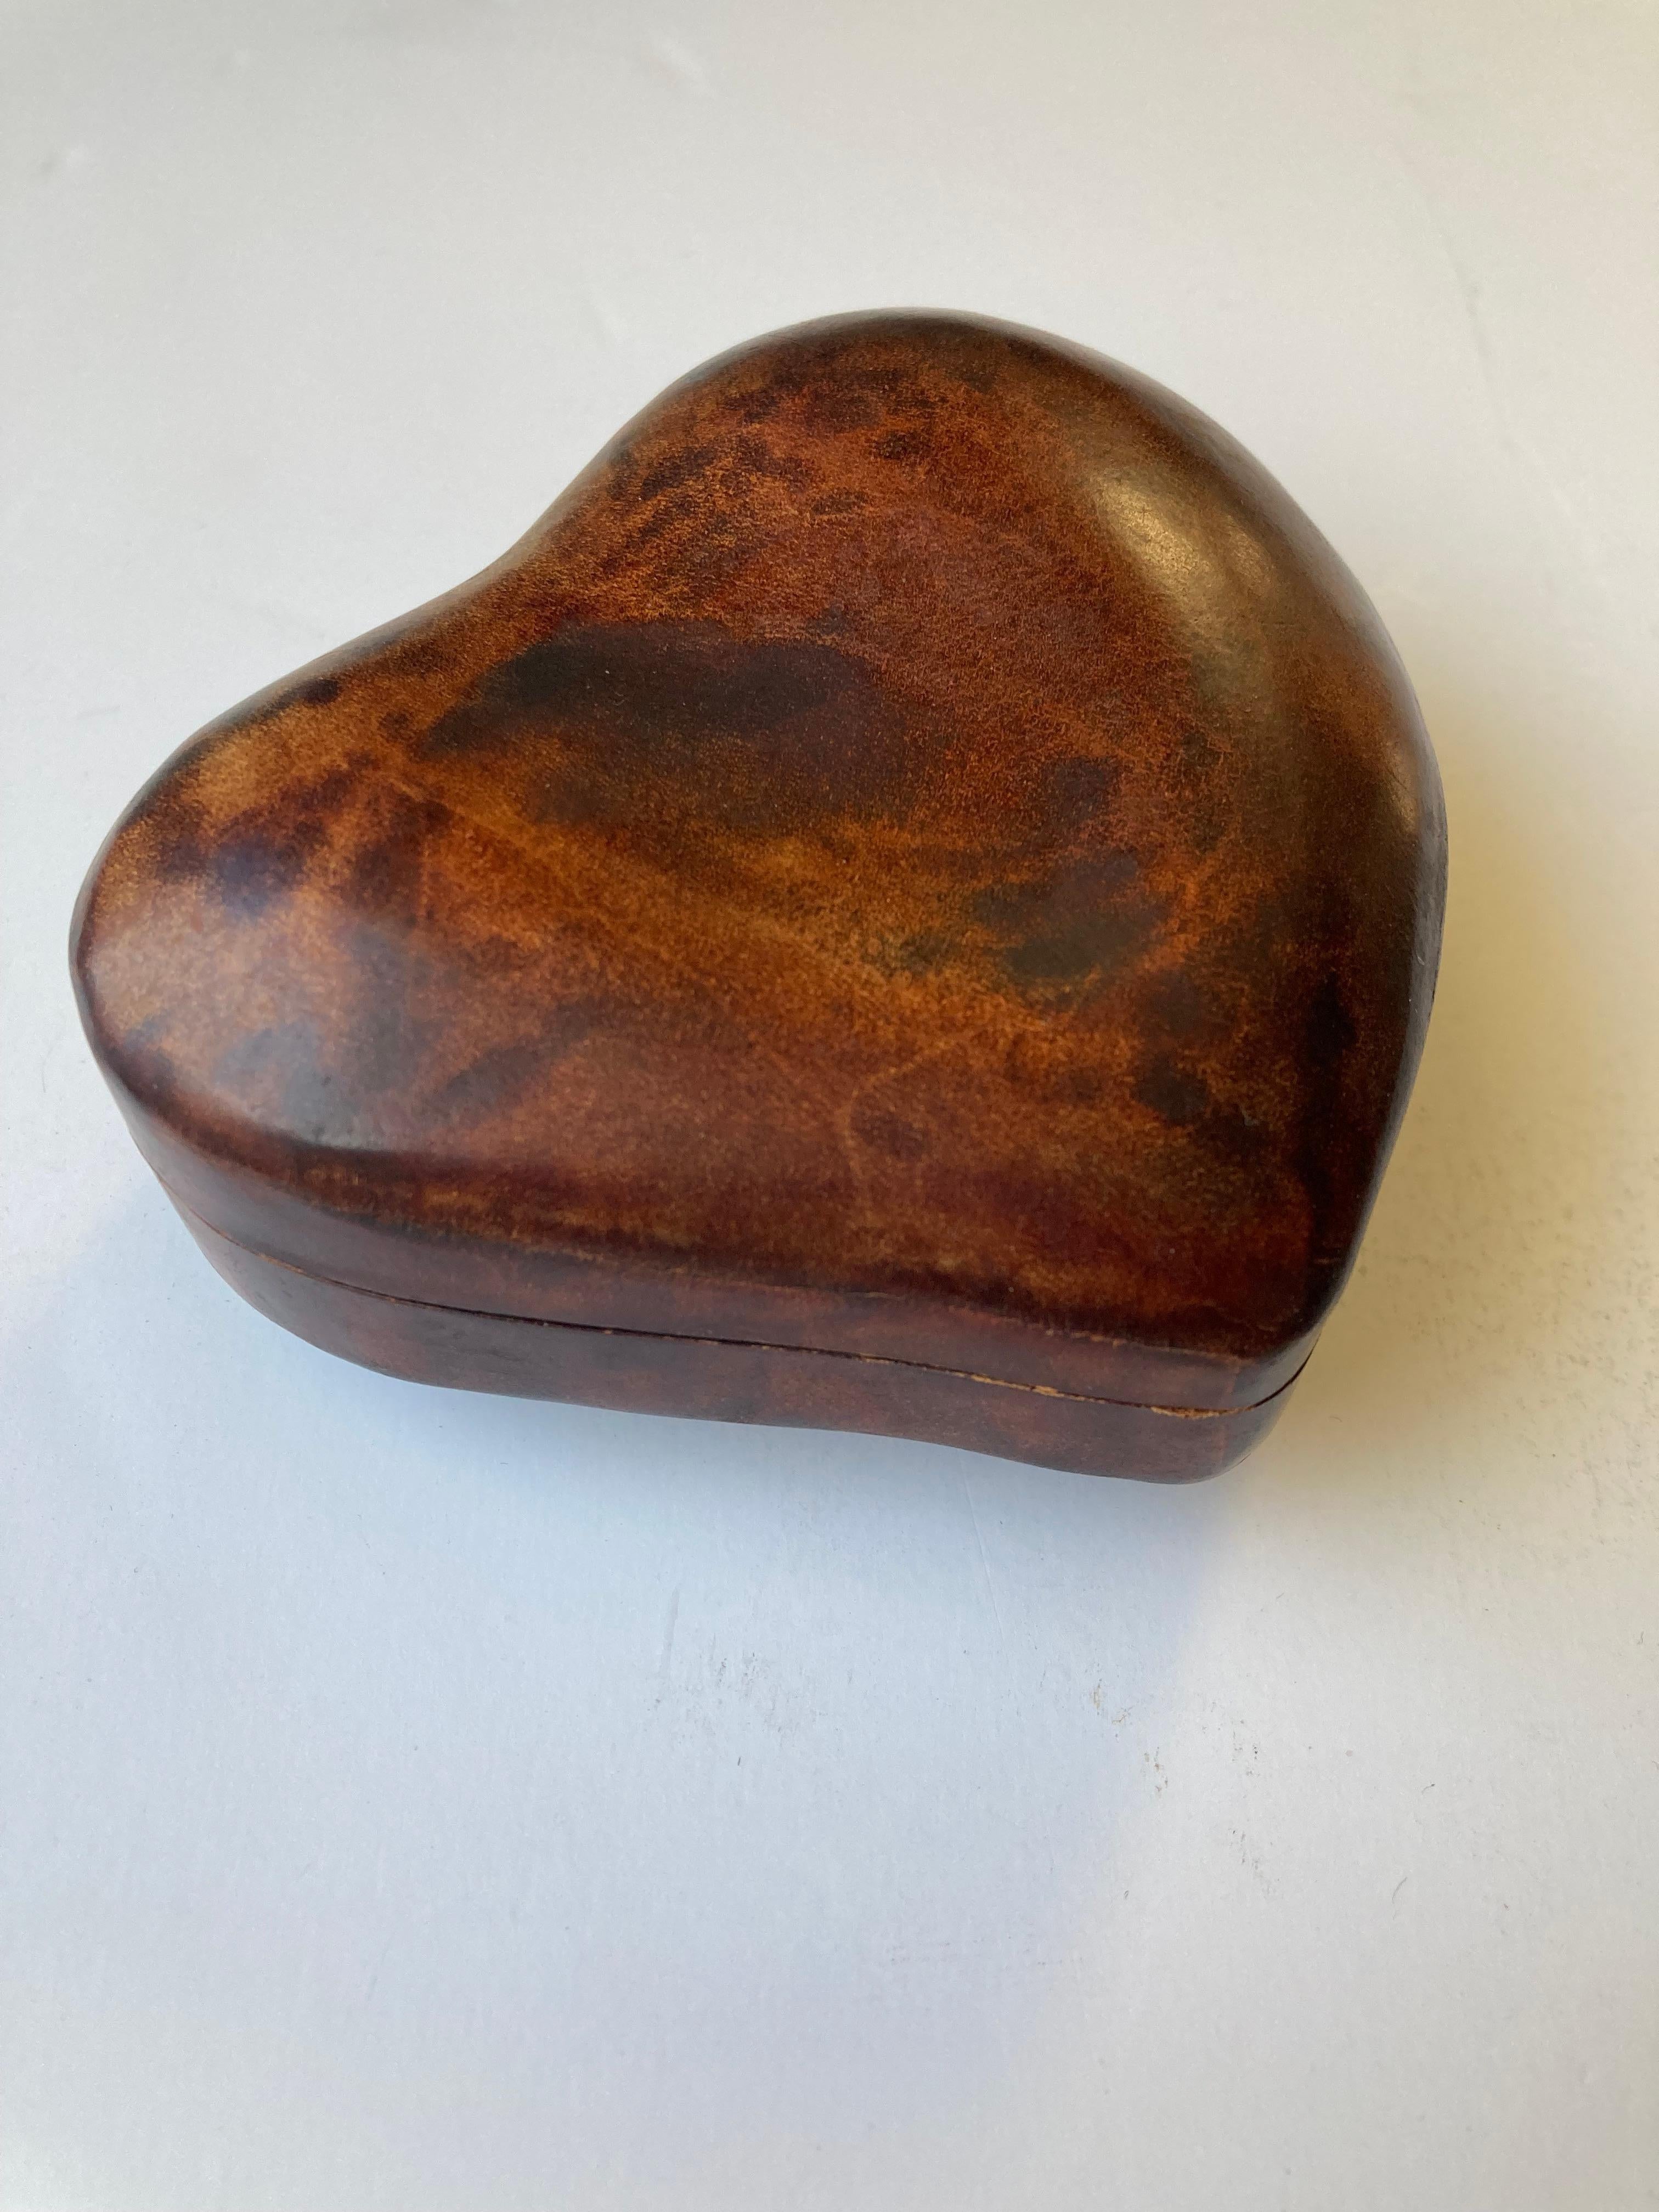 Magnifique boîte en cuir en forme de cœur, conçue par l'artiste / designer bien connu.  Elsa Peretti.